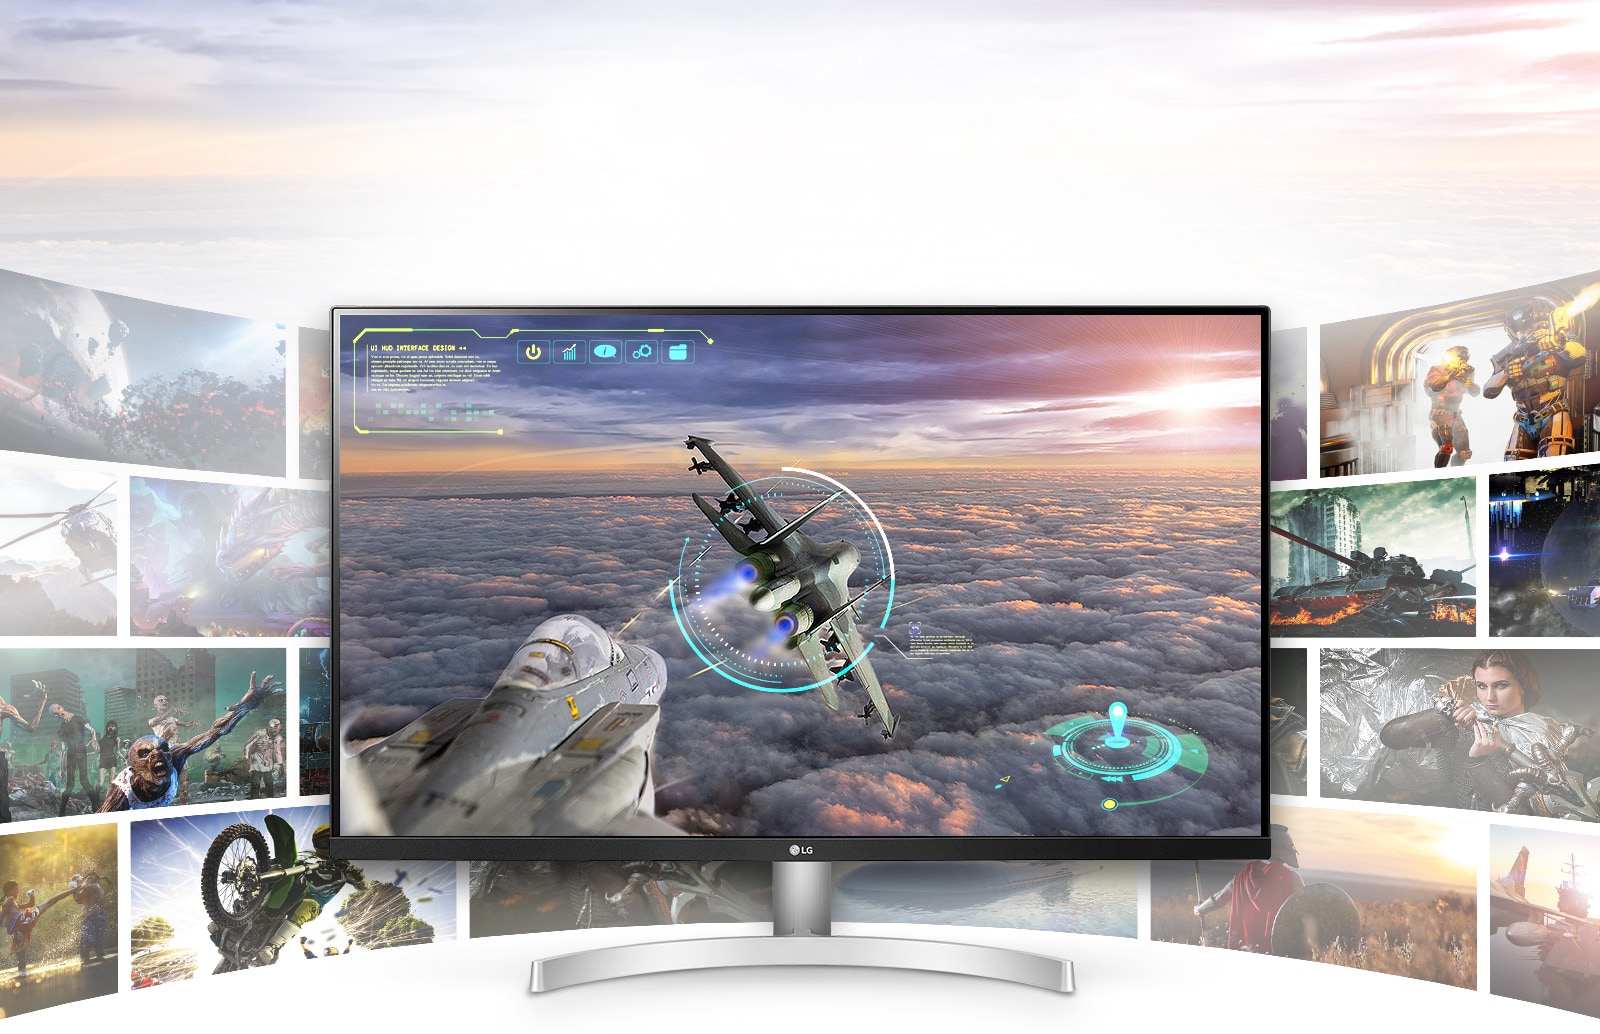 תצוגת LG UHD 4K מקנה לסצנות המשחקים איכות צלולה להדהים ופירוט עשיר.